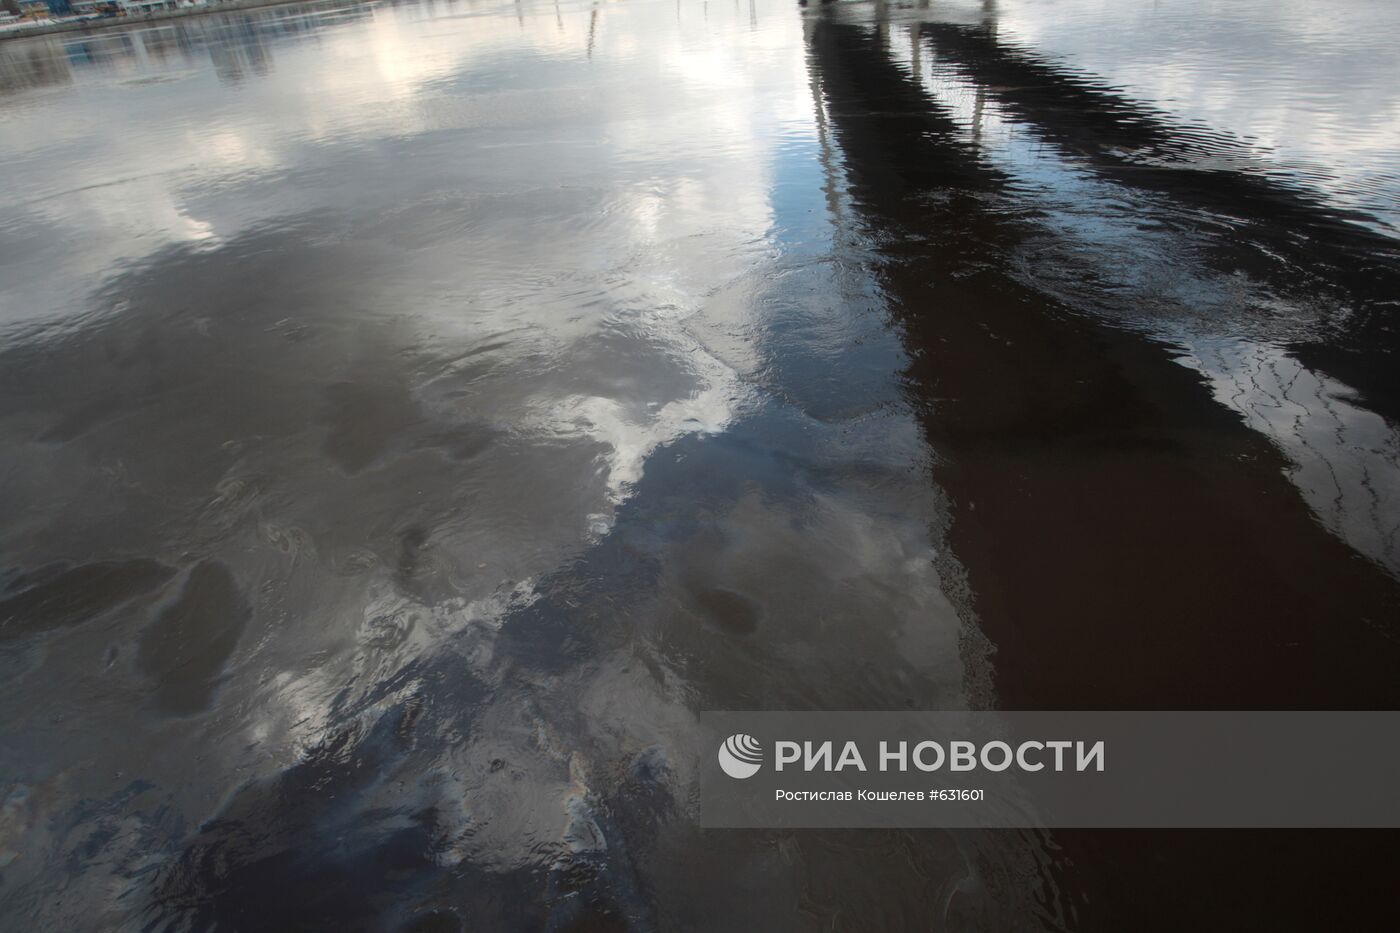 Нефтяное пятно движется по Неве в Санкт-Петербурге